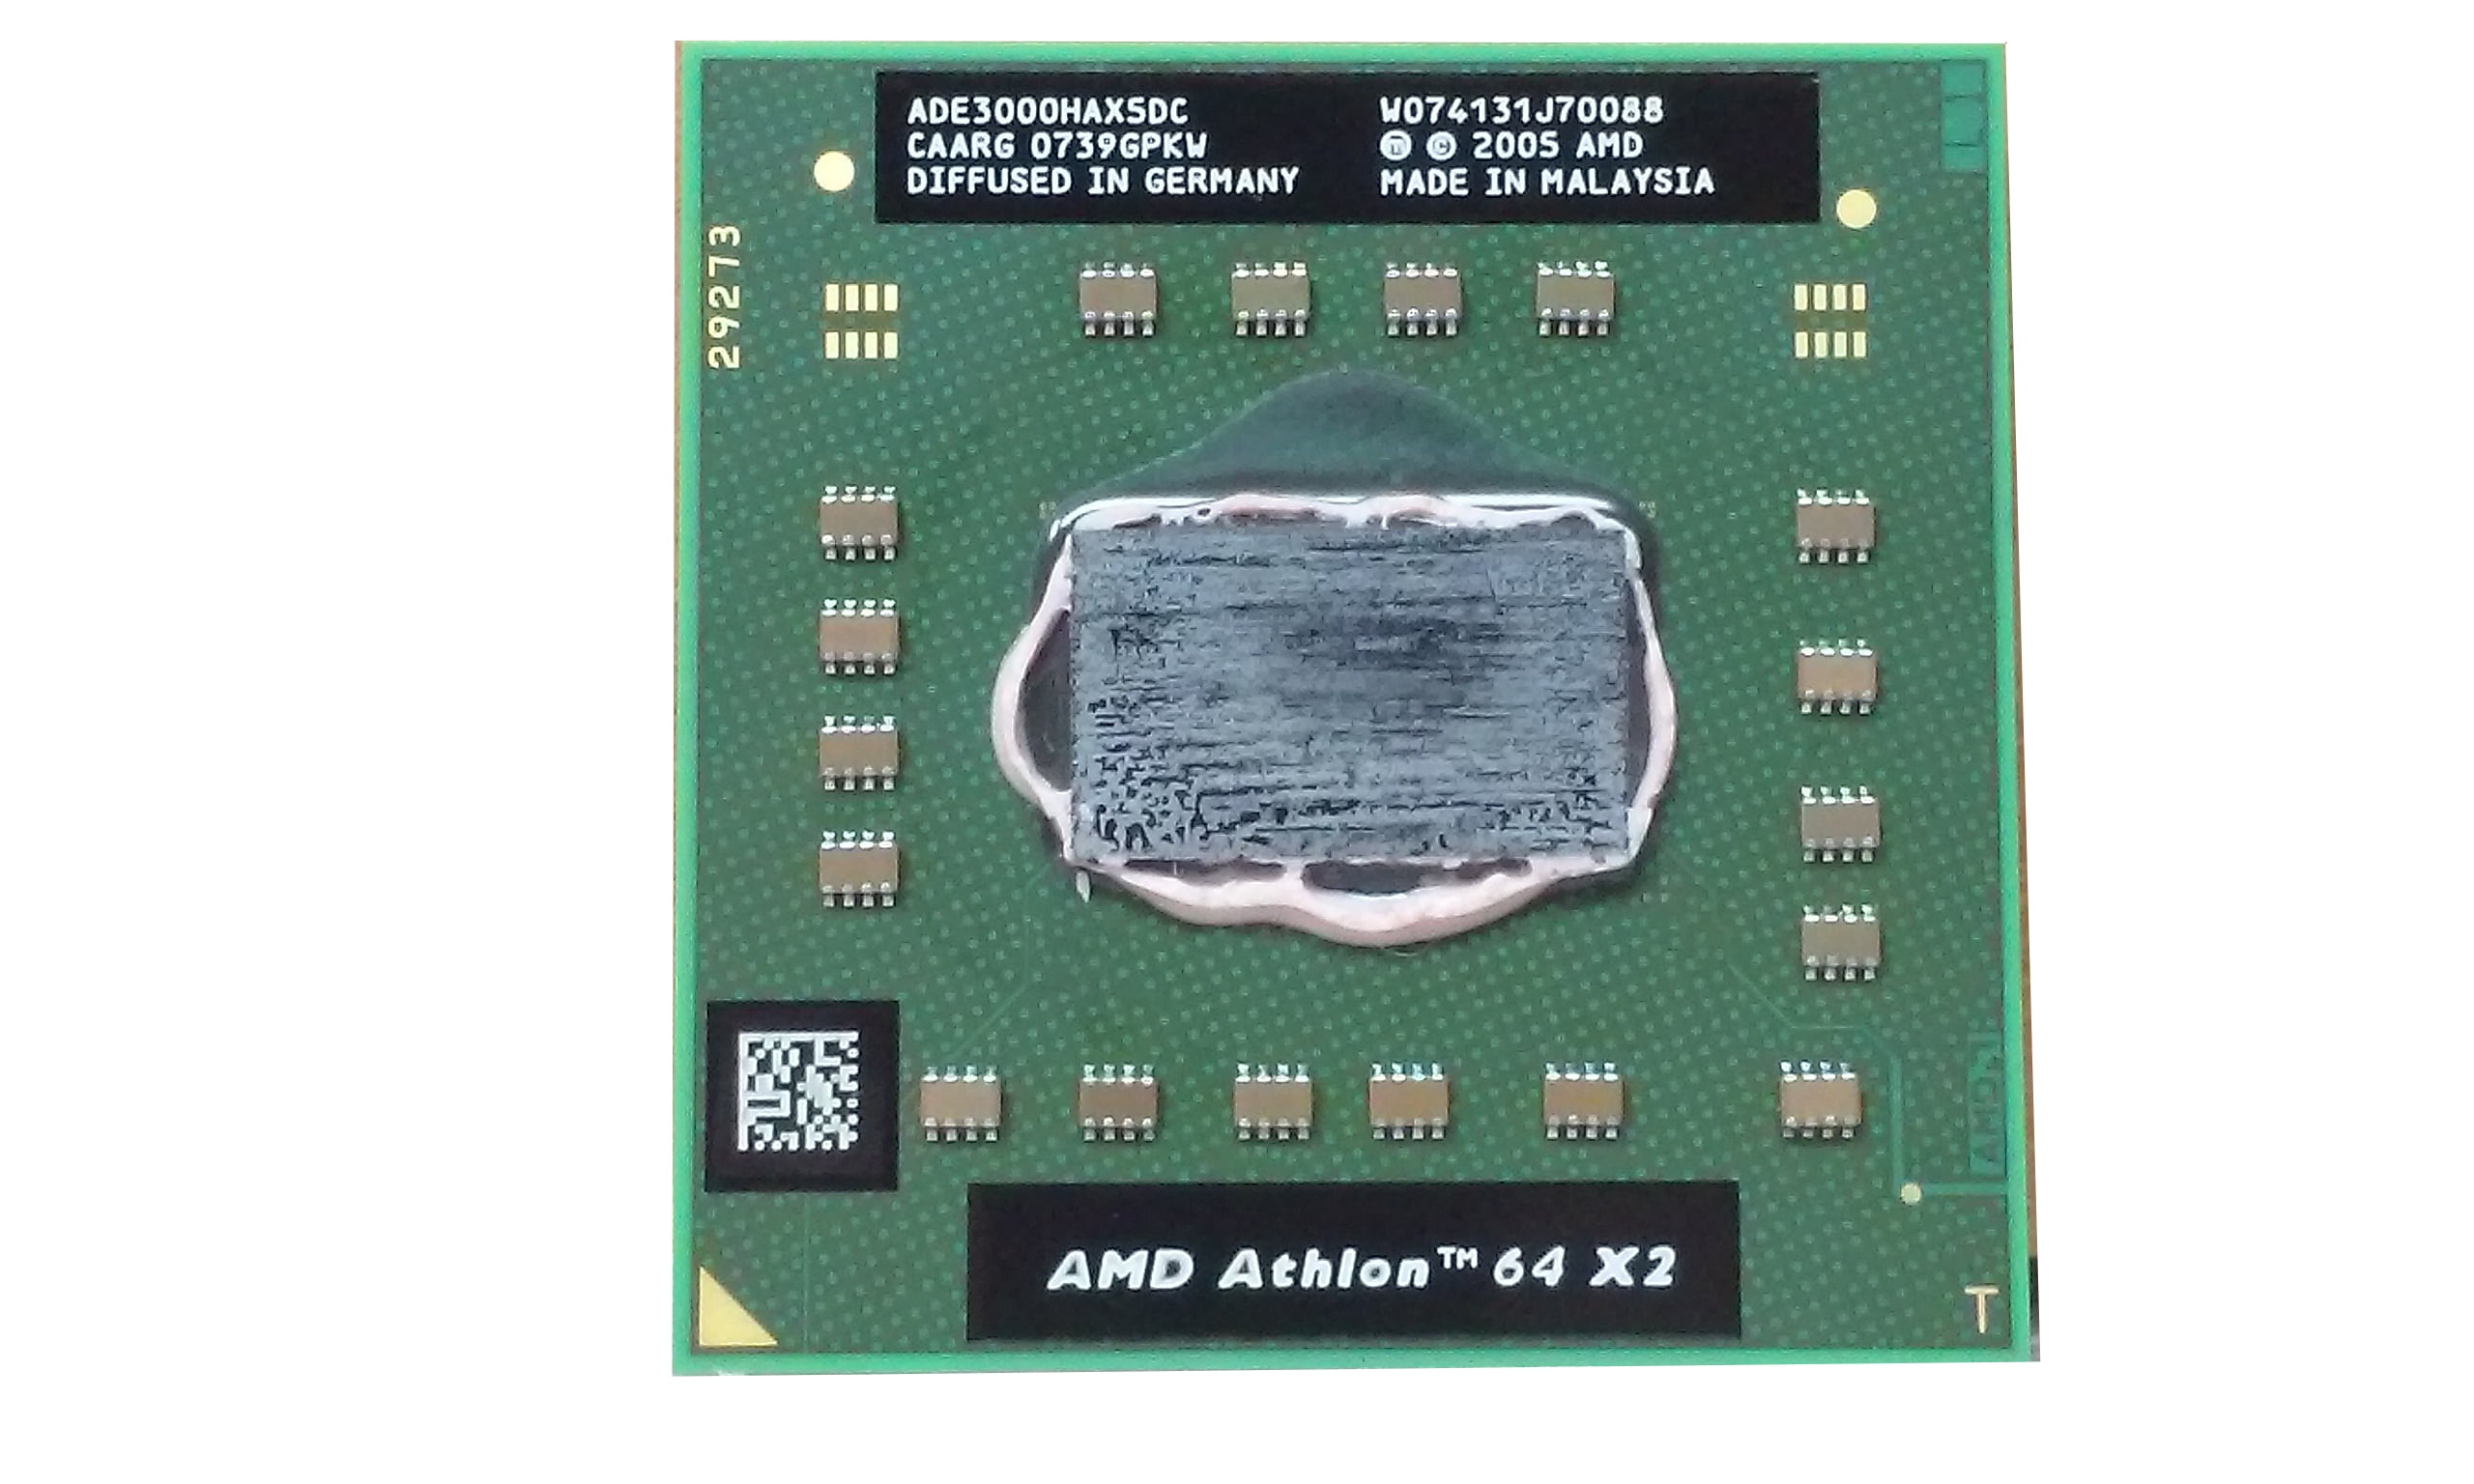 Amd athlon 4400. AMD Turion 64 x2 Socket. AMD Athlon 64 3000+ Orleans am2, 1 x 1800 МГЦ. Athlon 64 3000+ ada3000aep4ax. AMD Athlon 64 x2 6400+.